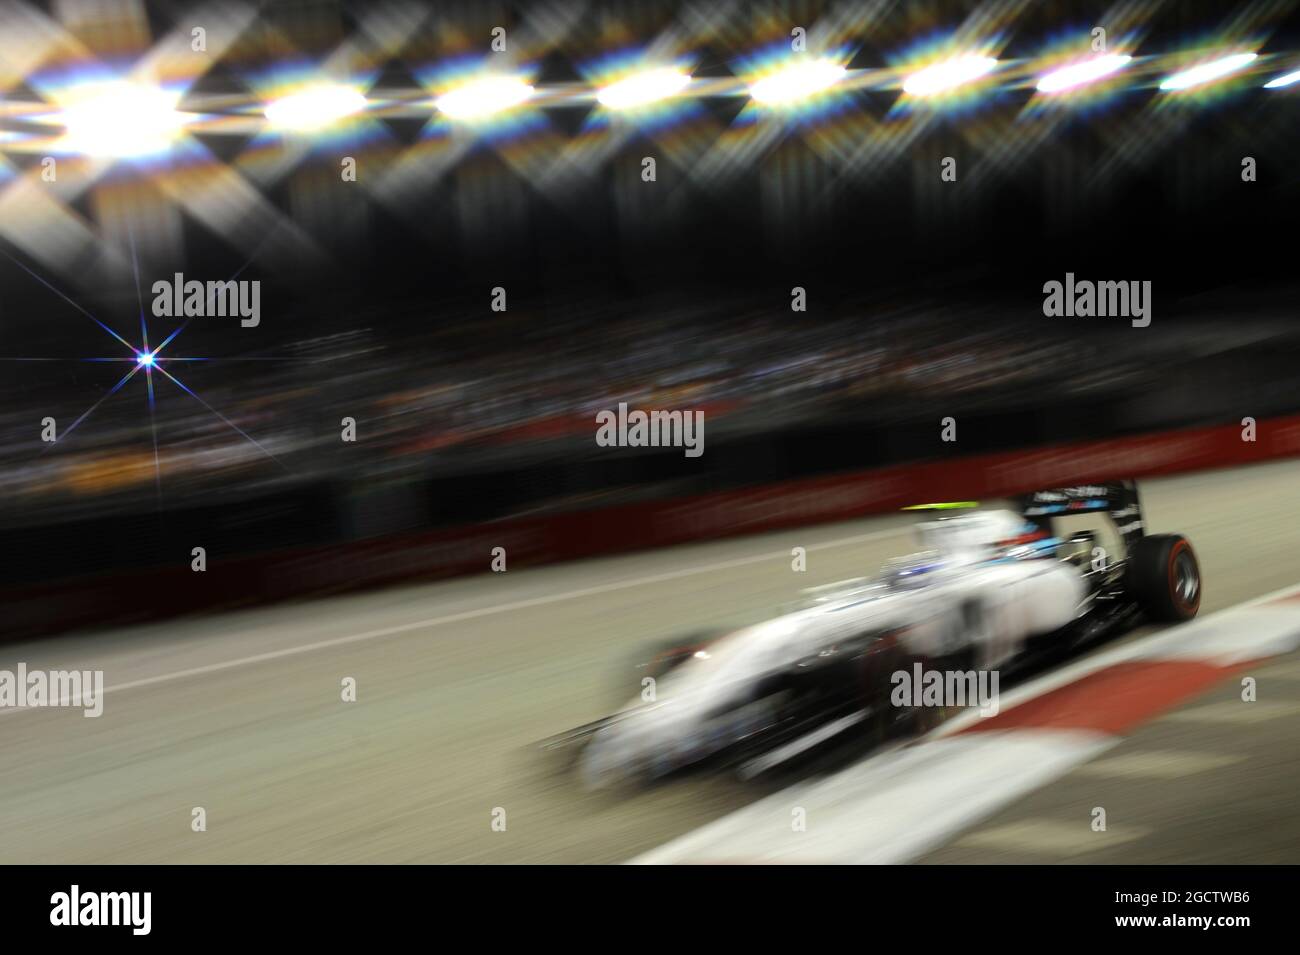 Felipe massa (BRA) Williams FW36. Gran Premio di Singapore, sabato 20 settembre 2014. Circuito Marina Bay Street, Singapore. Foto Stock